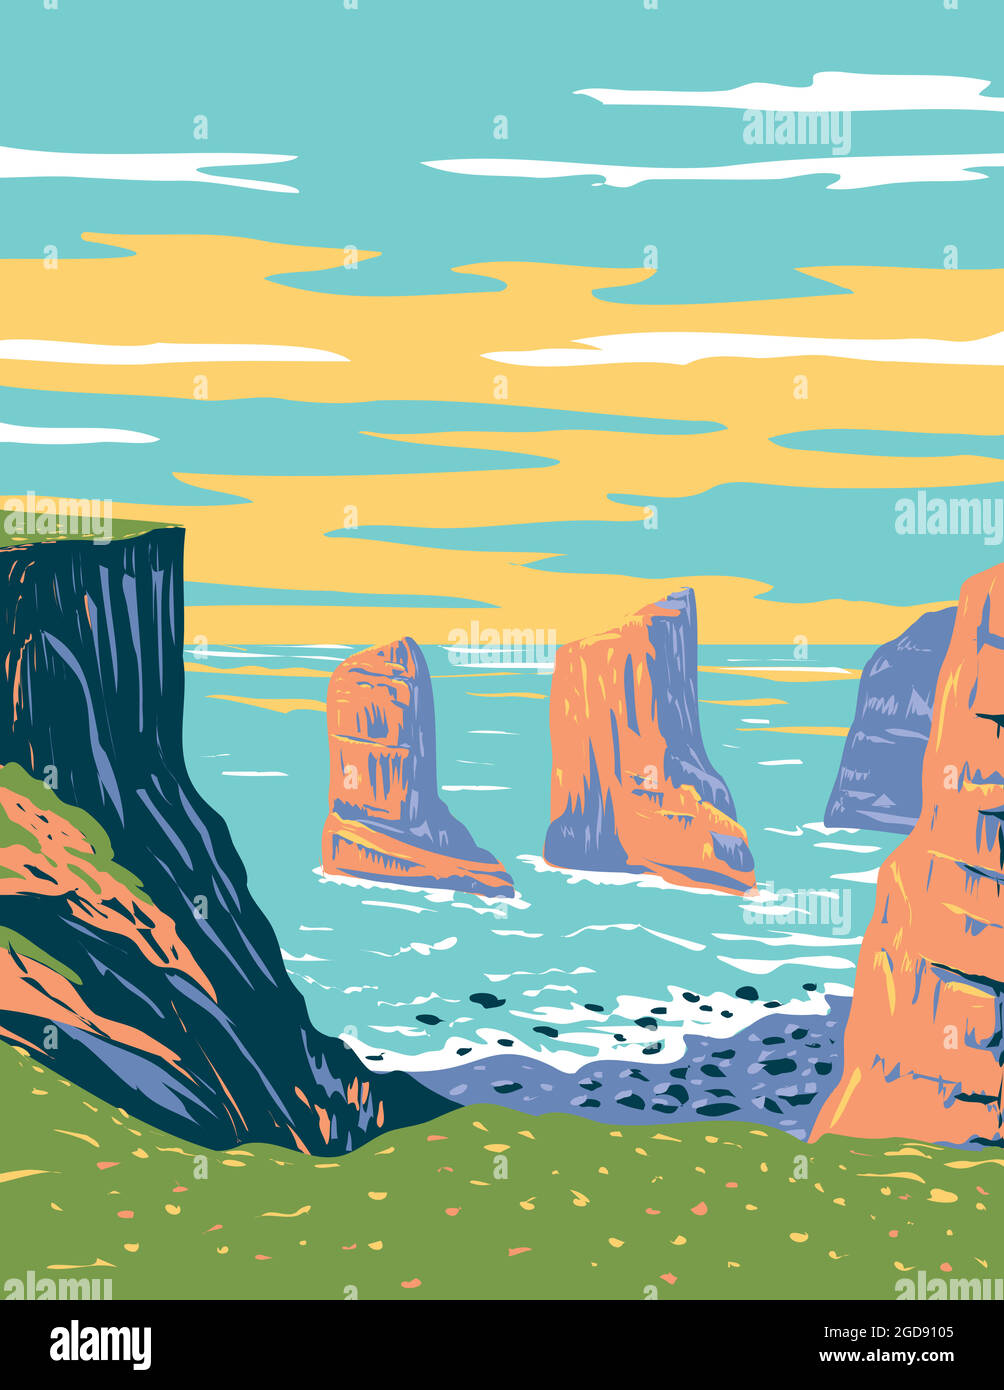 Affiche Art déco ou WPA de l'Elegug Stack Rocks située dans le parc national de la côte de Pembrokeshire, dans l'ouest du pays de Galles, Royaume-Uni fait en travaux projet admi Illustration de Vecteur